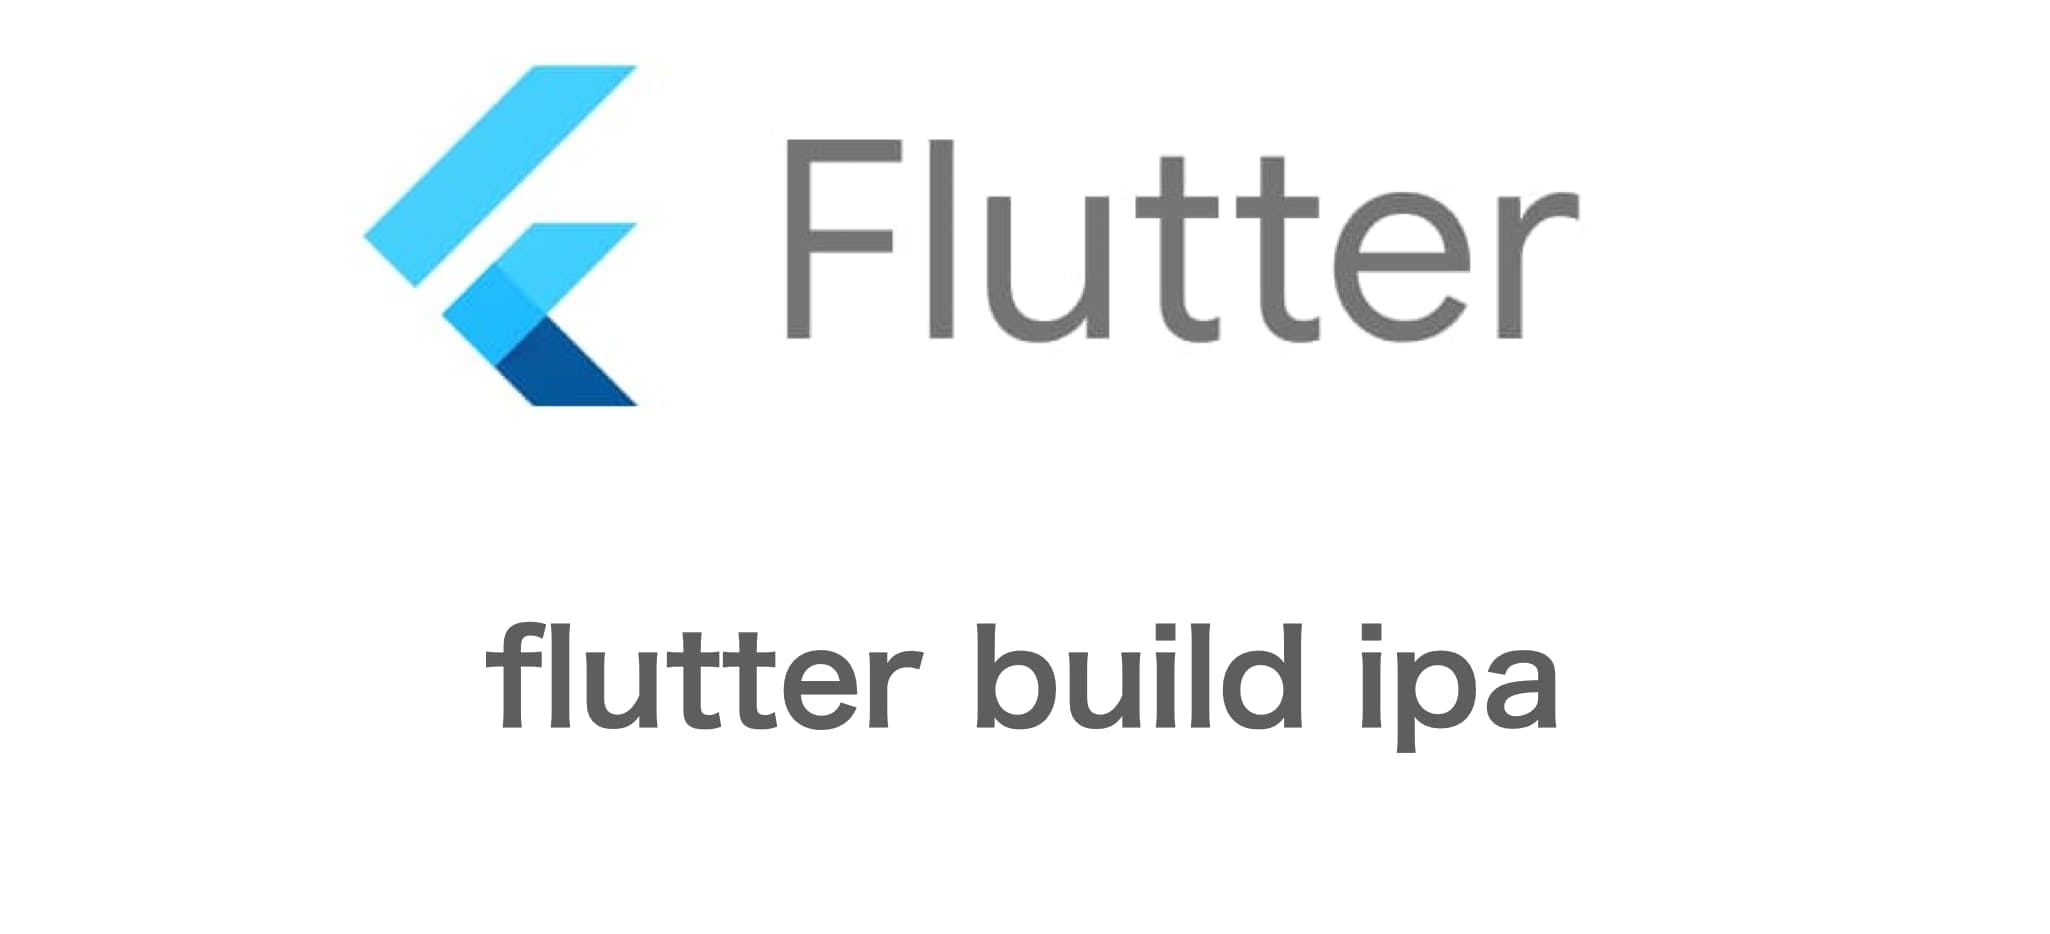 flutter build ipa コマンドでビルドをApple Store Connectへアップロードする方法